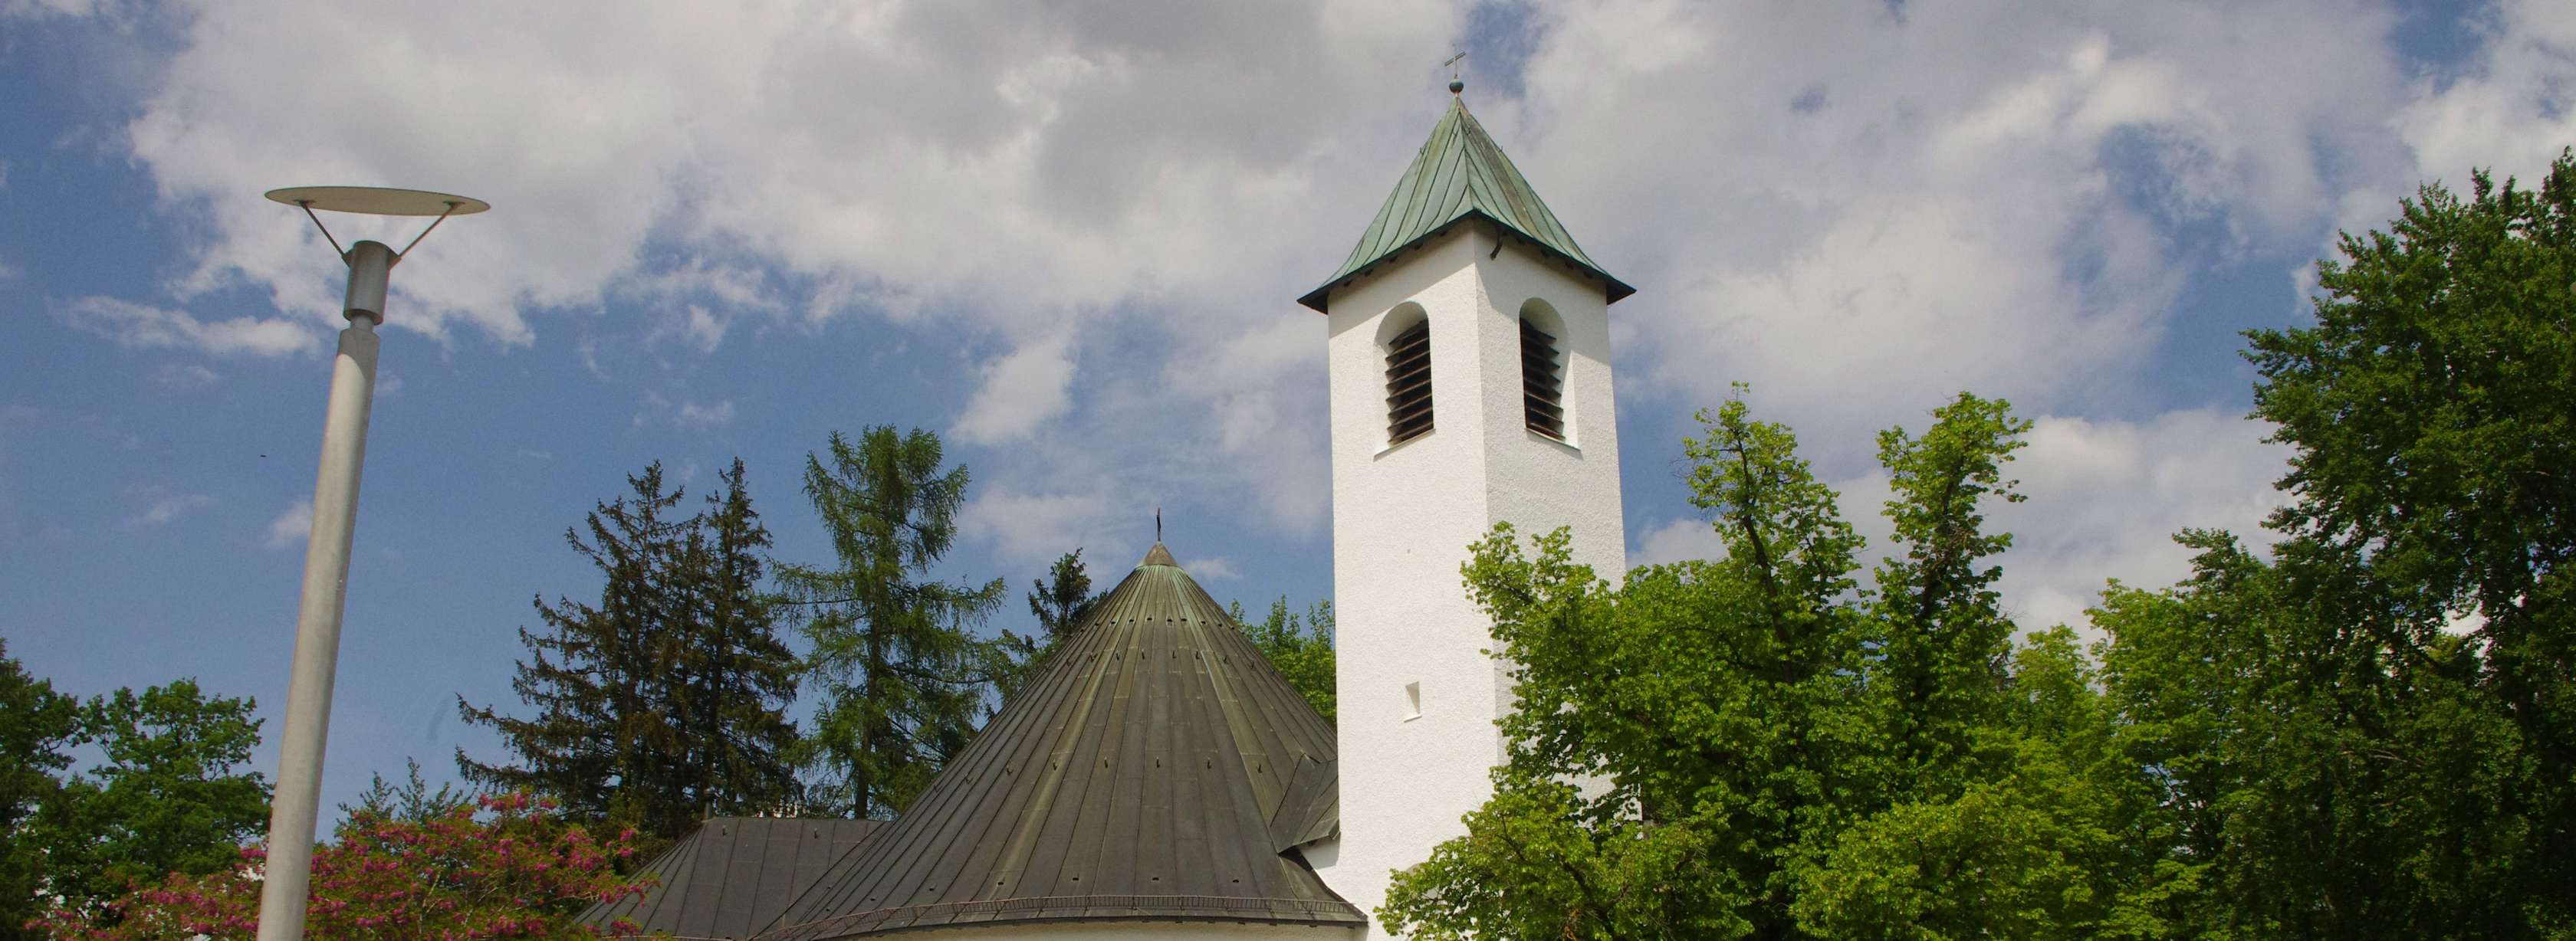 Kirche vor einem blauen Himmel in Ottobrunn